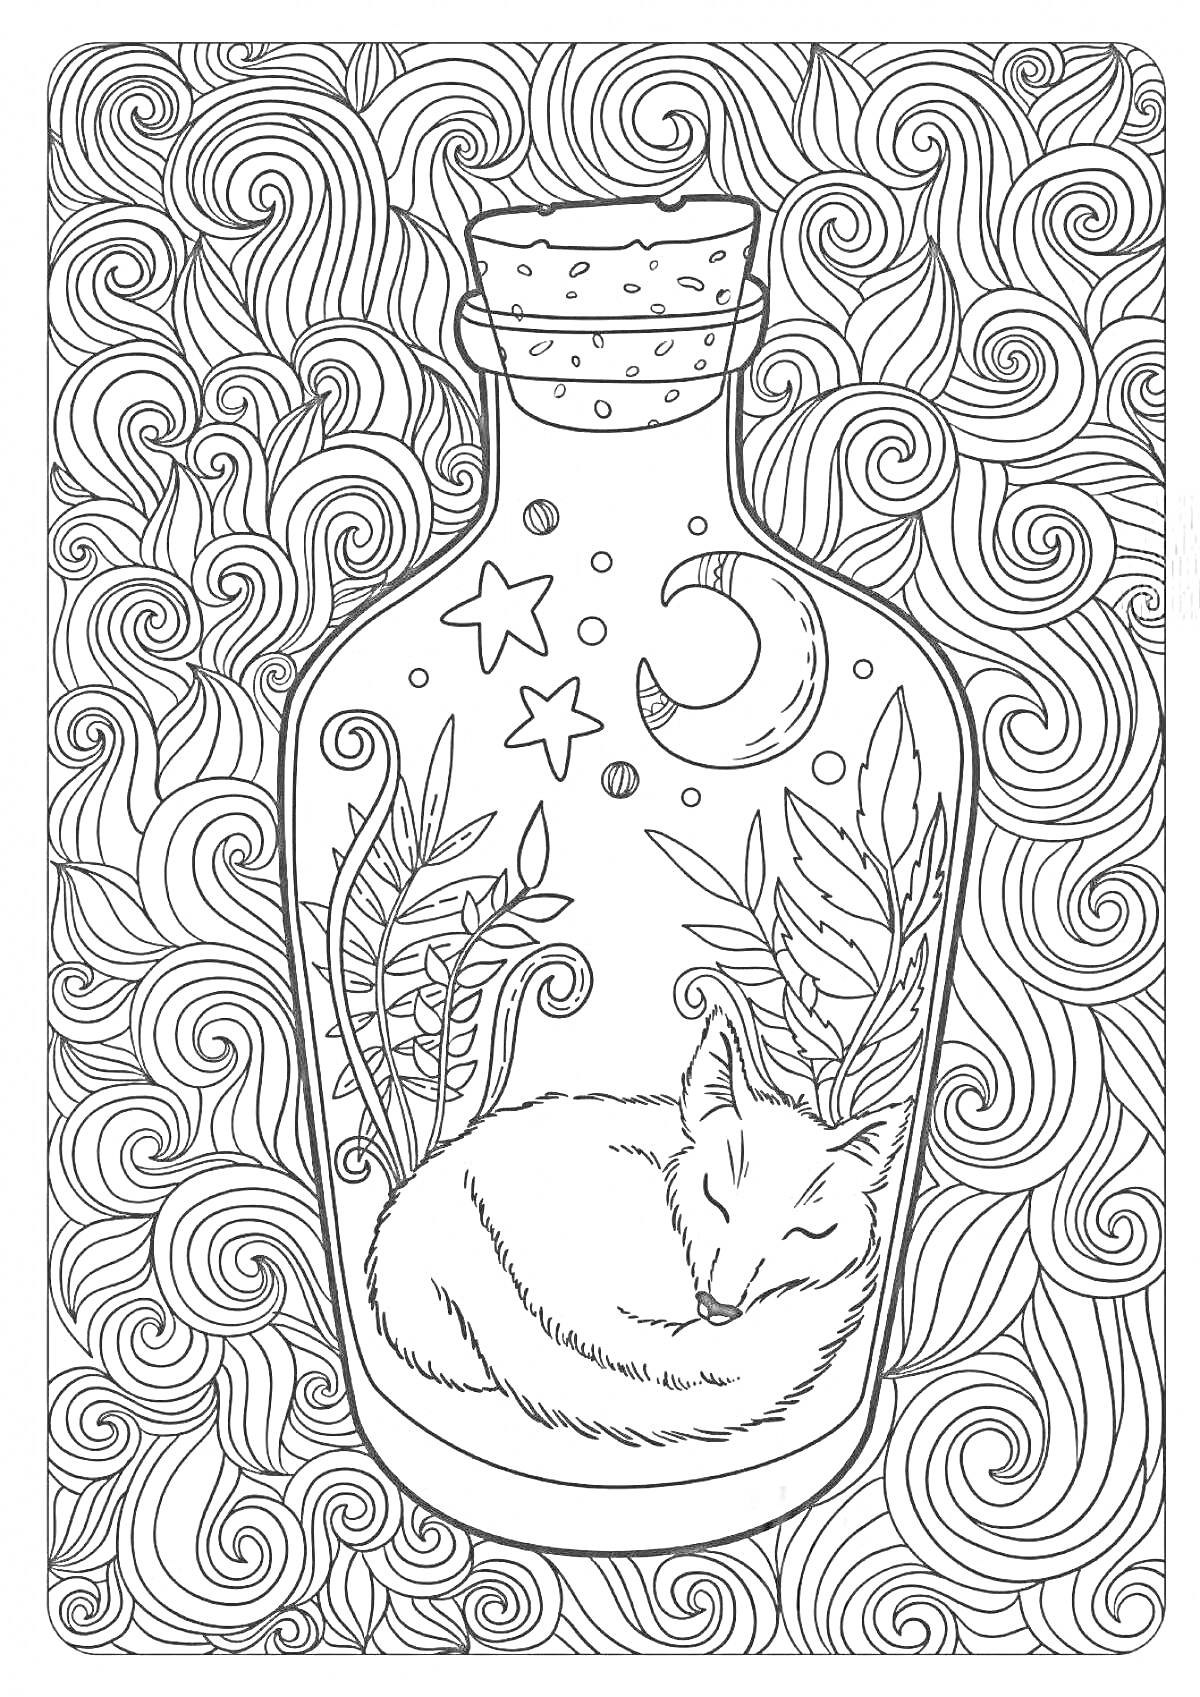 Спящий лис в бутылке с листьями, звездами и луной на фоне волнистого узора